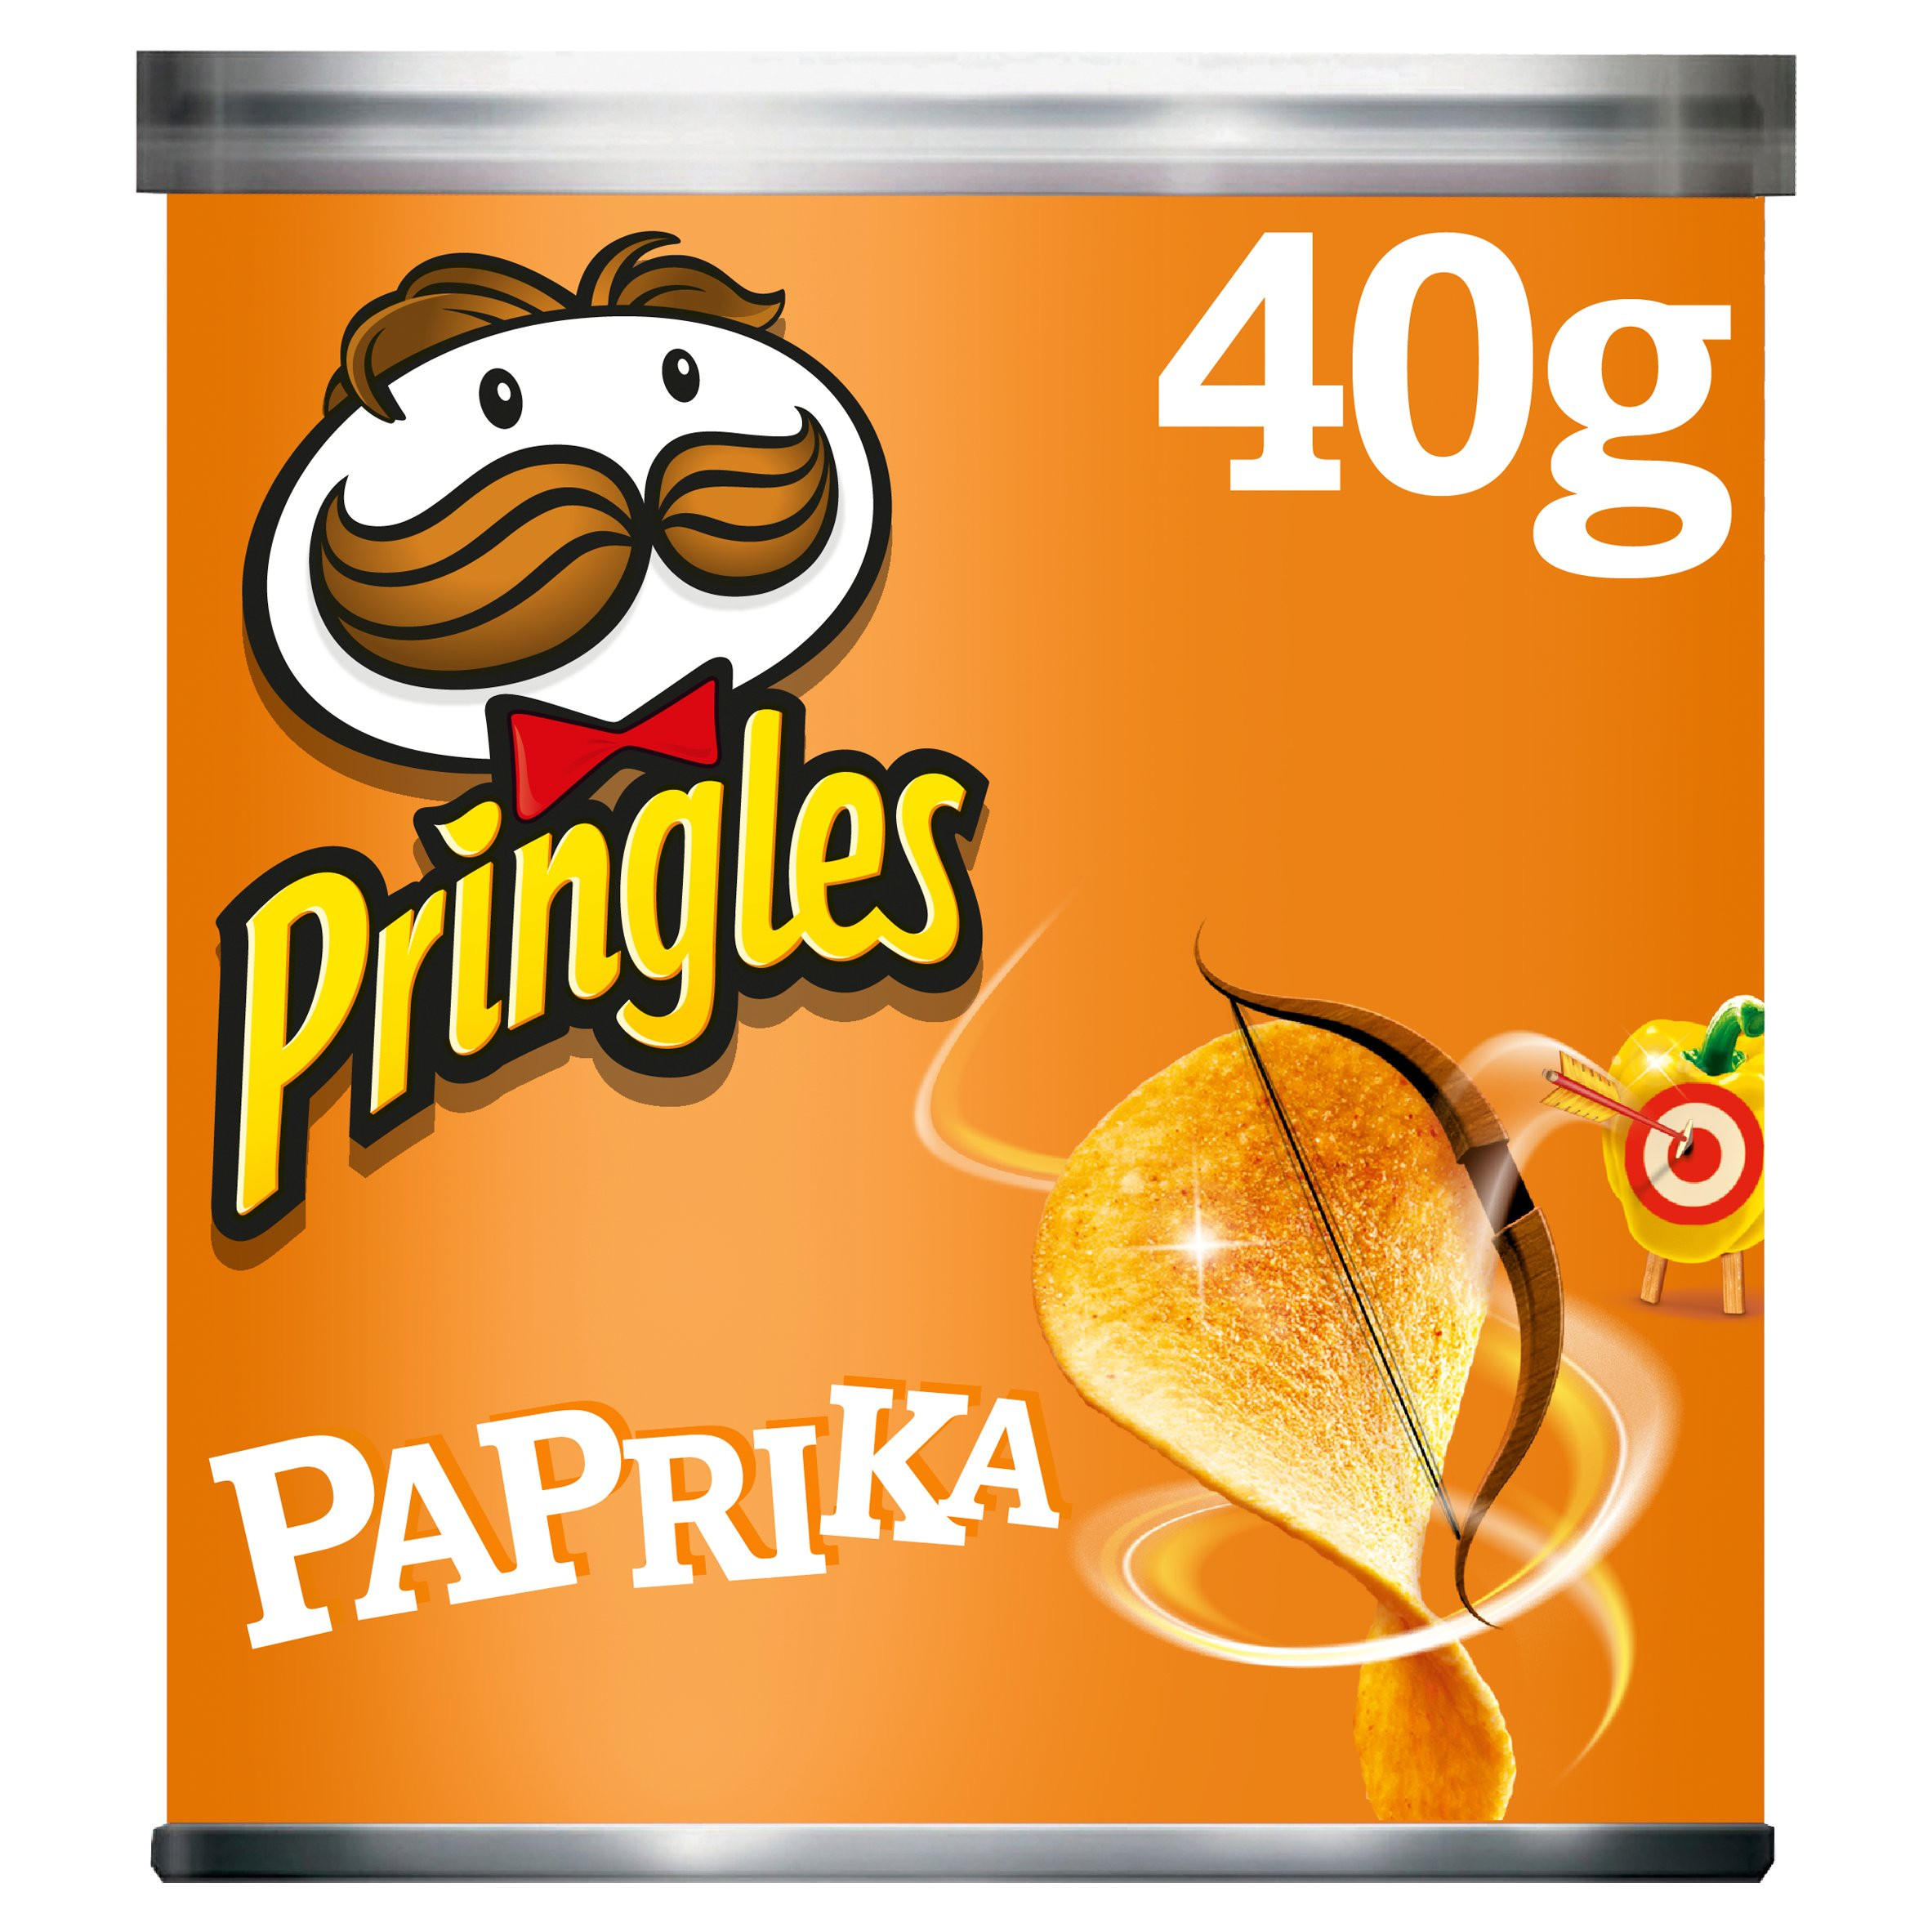 Pringles Paprika Crisps, 40g | Sharing Crisps | Iceland Foods